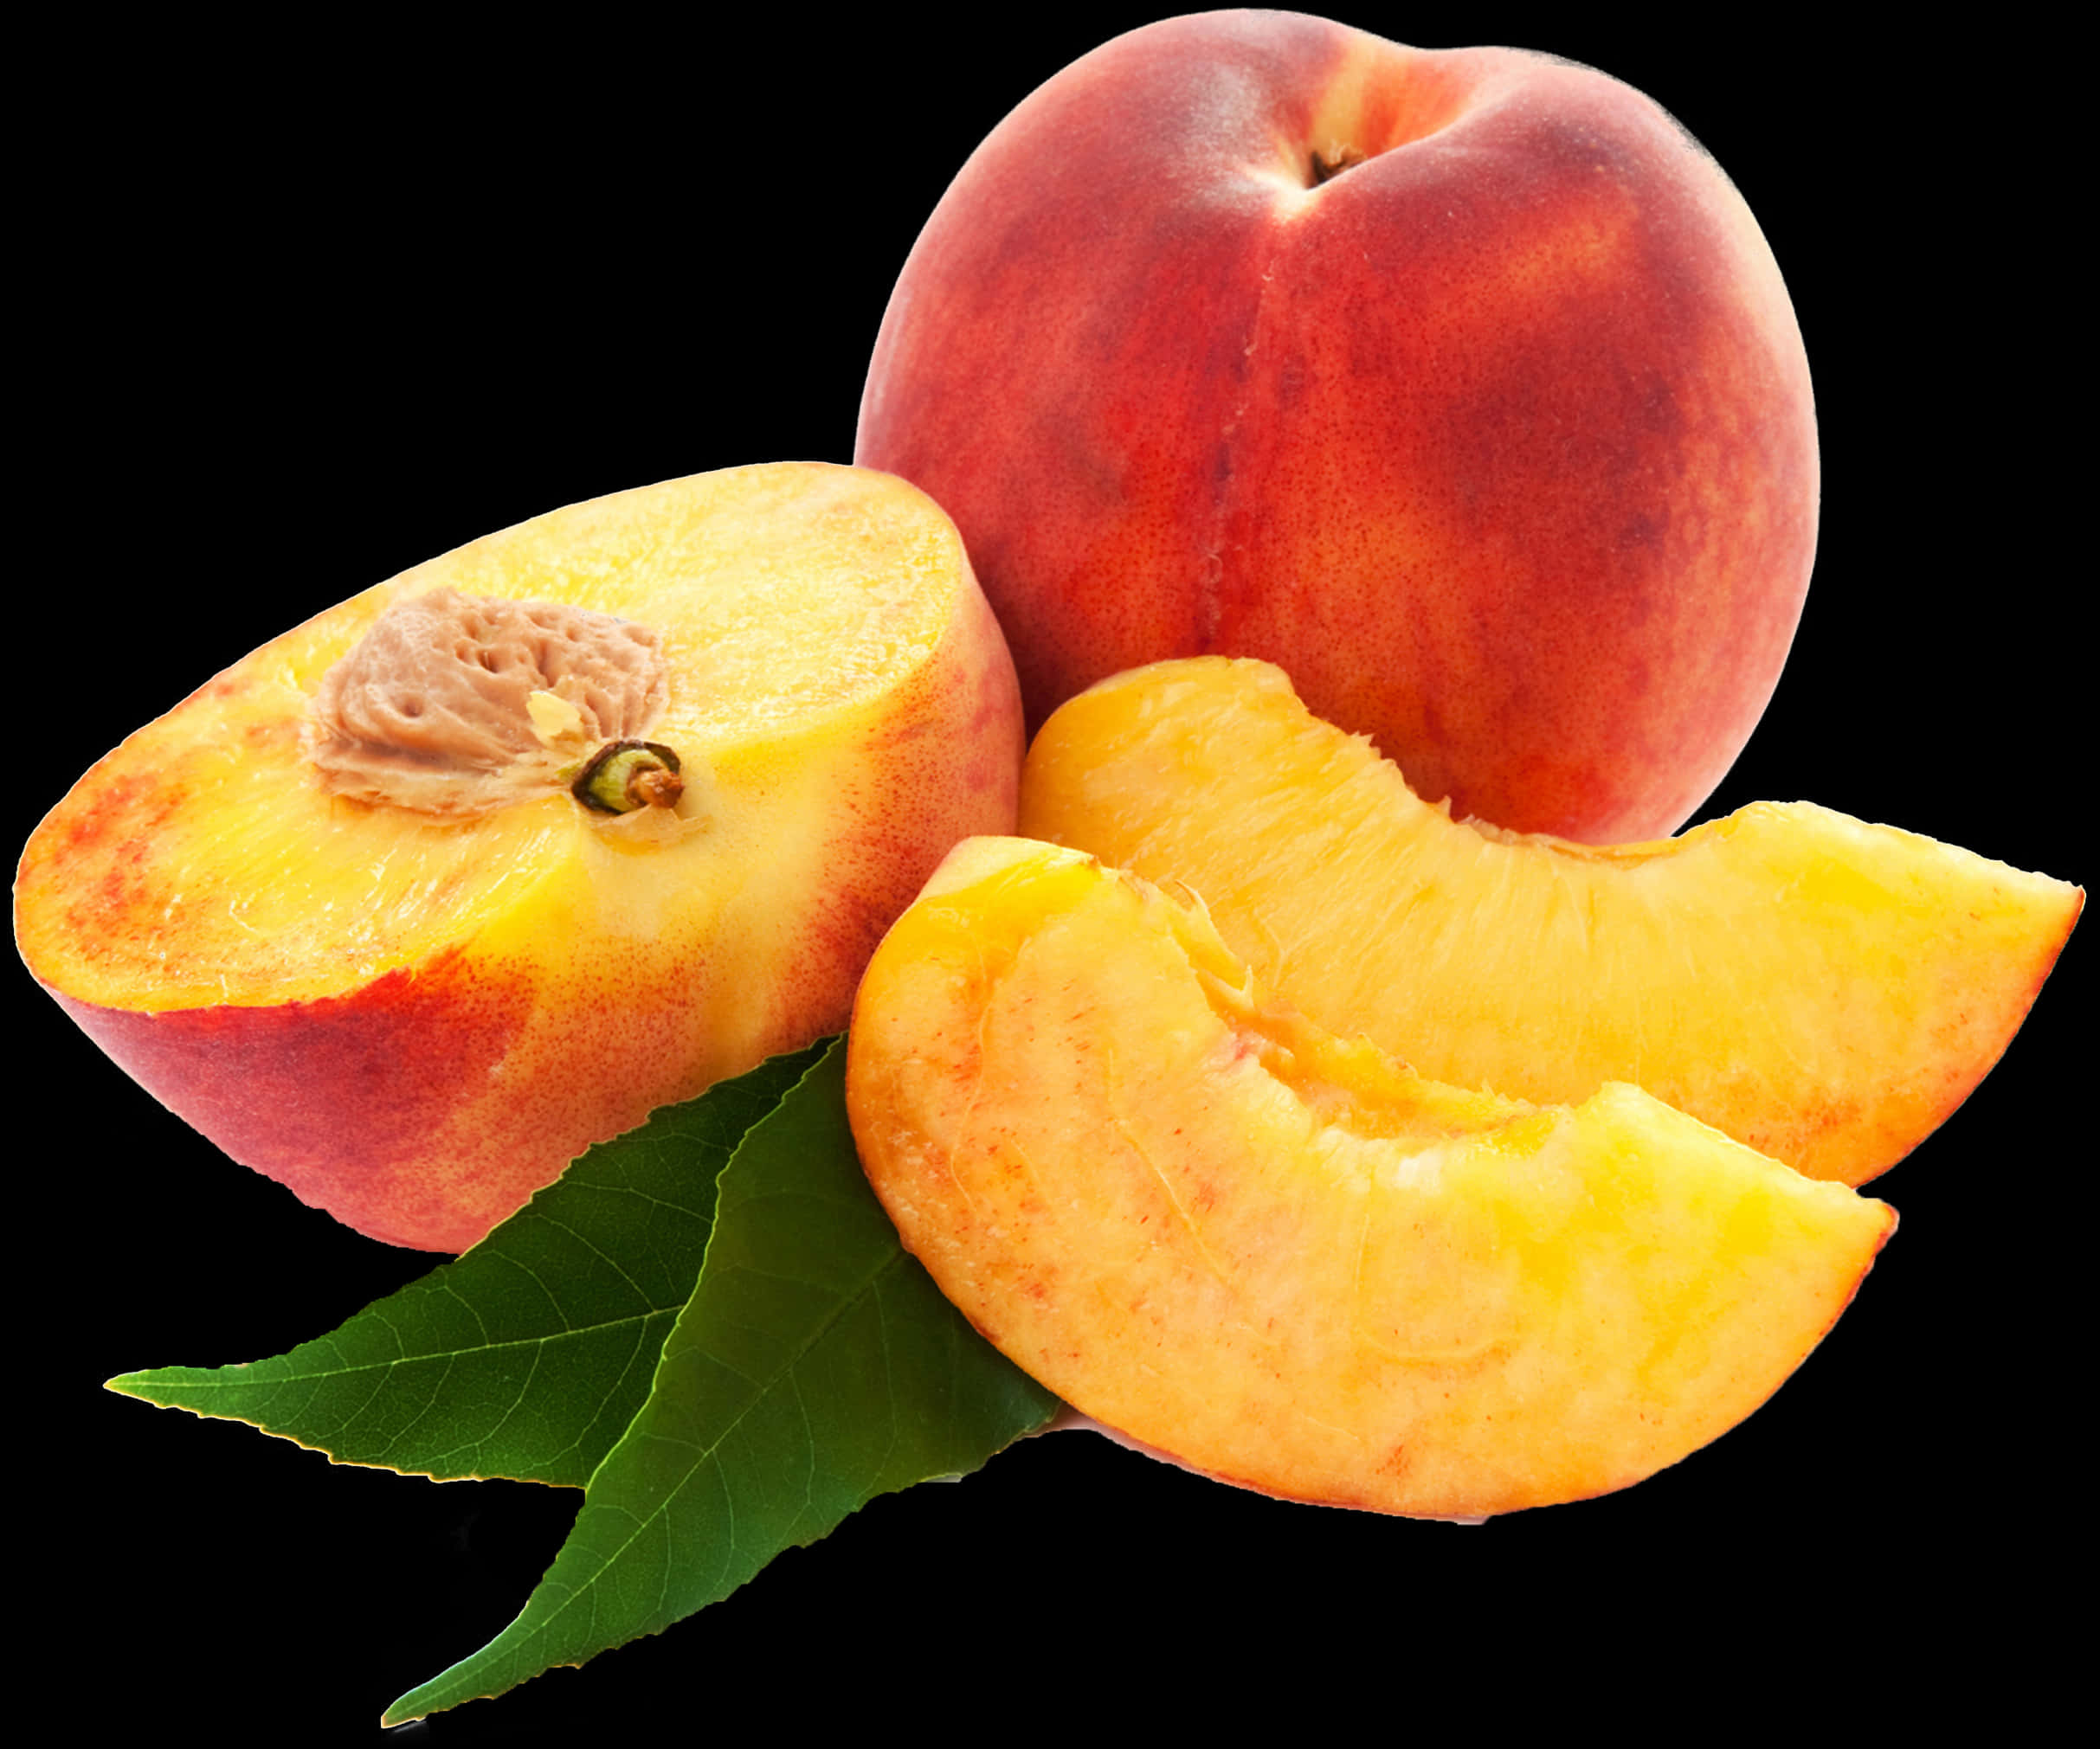 A Peach And A Slice Of Peach